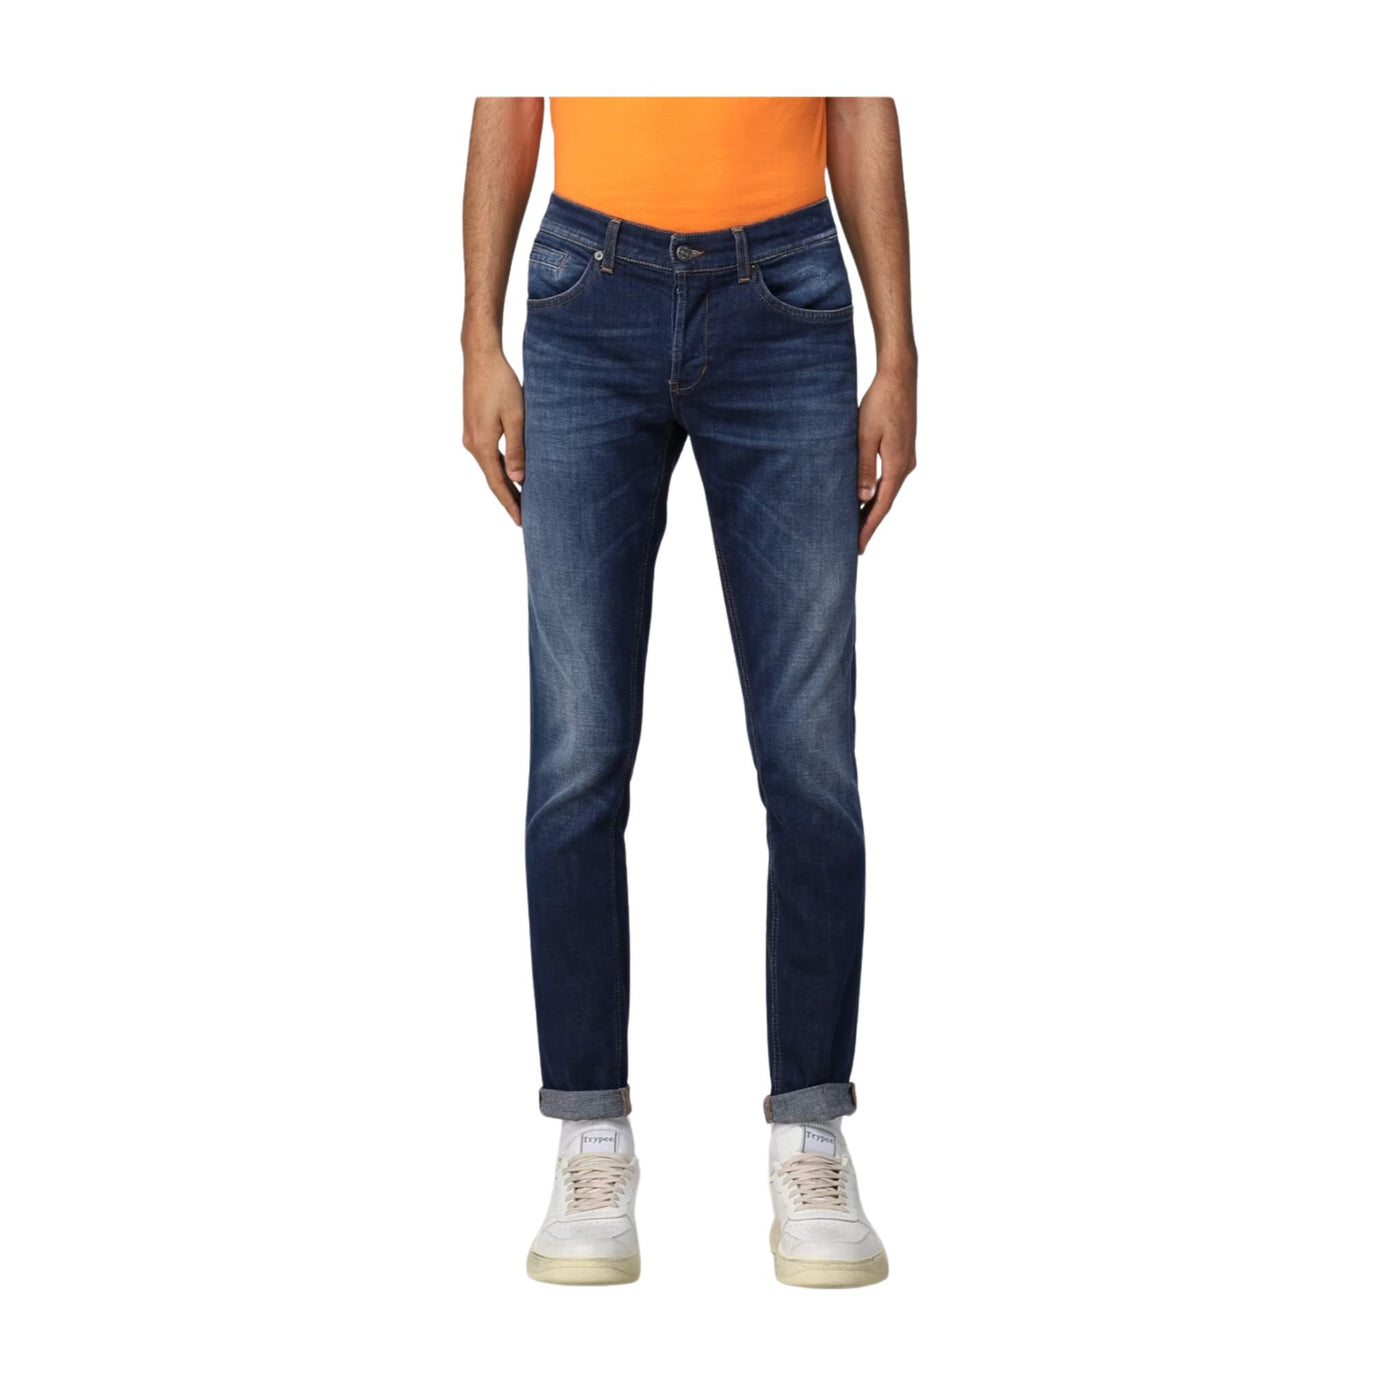 Jeans Uomo in denim di cotone elasticizzato dotato di cinque tasche